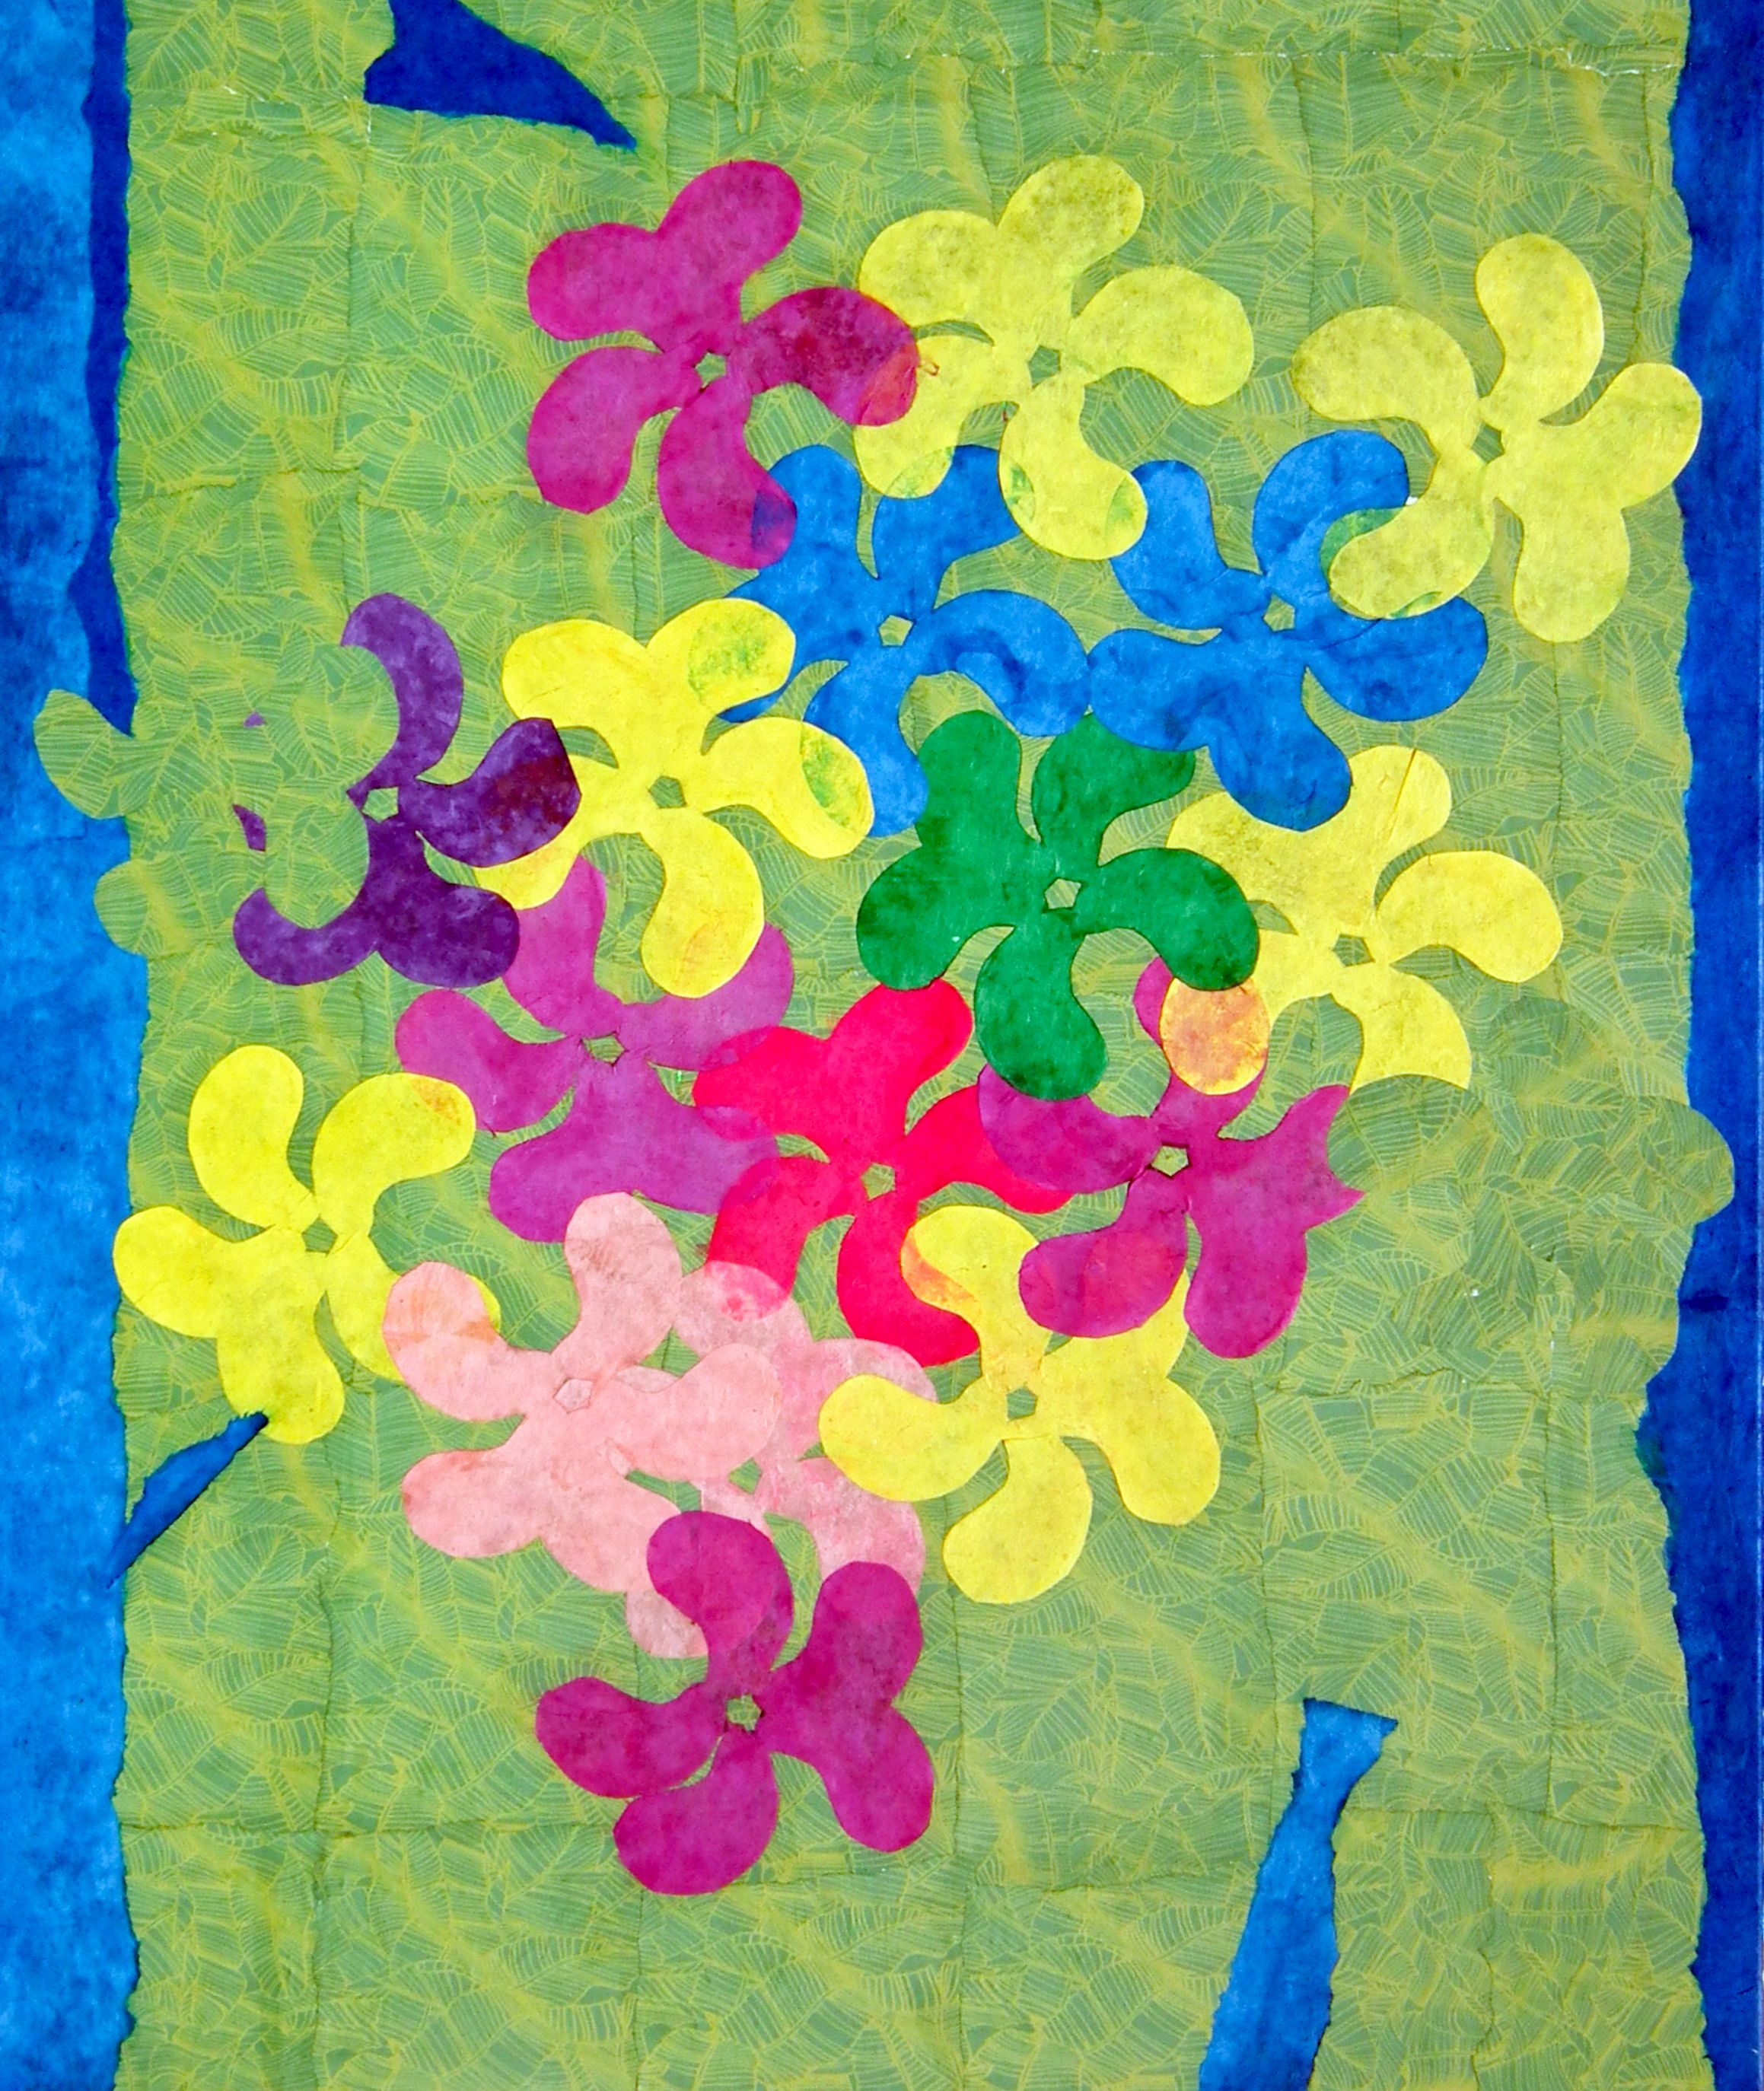 Ronny Cameron's "Mother's Day" figurative abstrakte Malerei zeigt farbenfrohe Blumen aus Papier und Leinwand